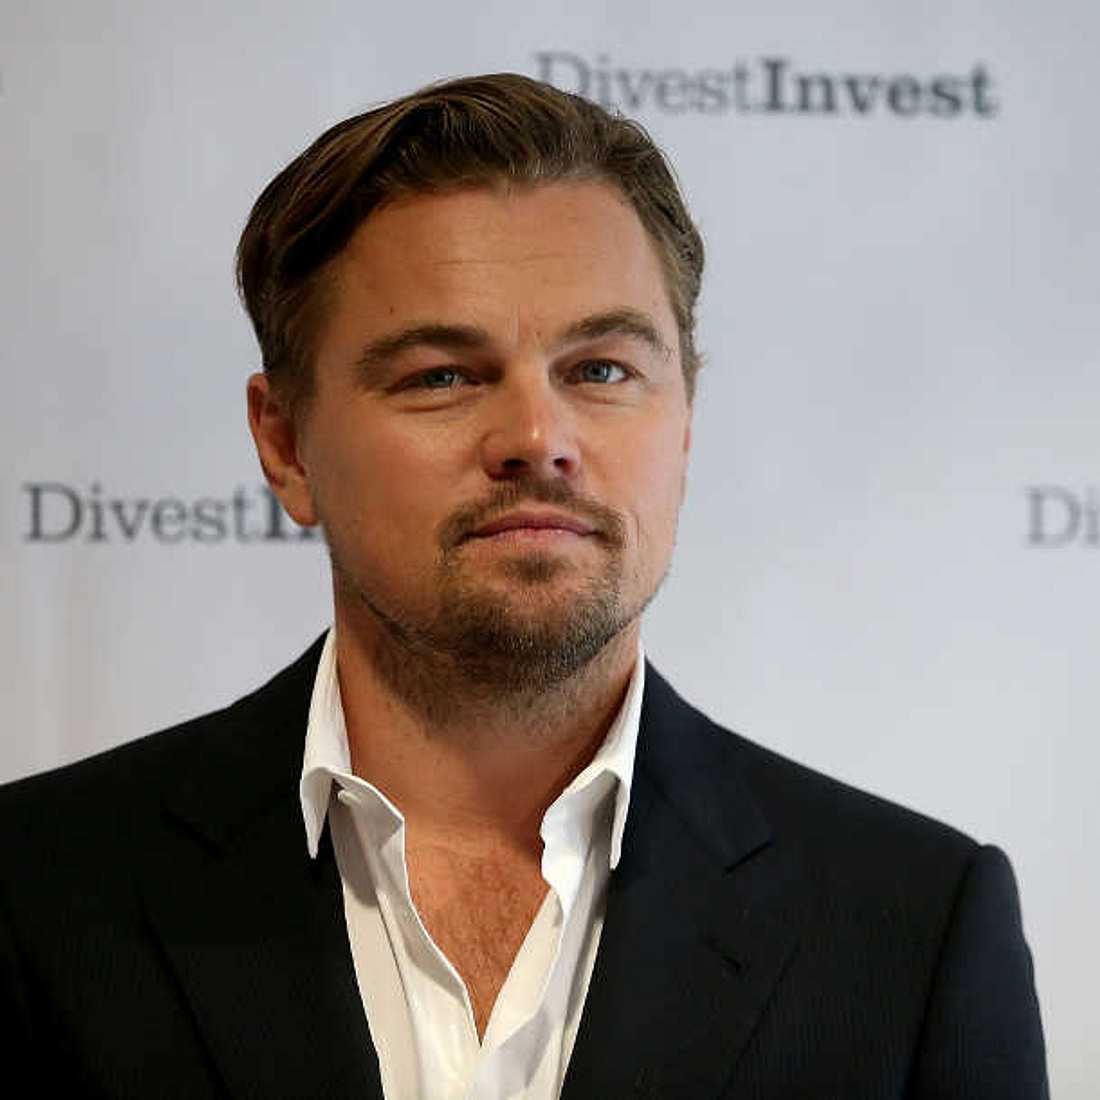 Skandal um Leonardo DiCaprio: Verliert er als UN-Botschafter seine Glaubwürdigkeit?